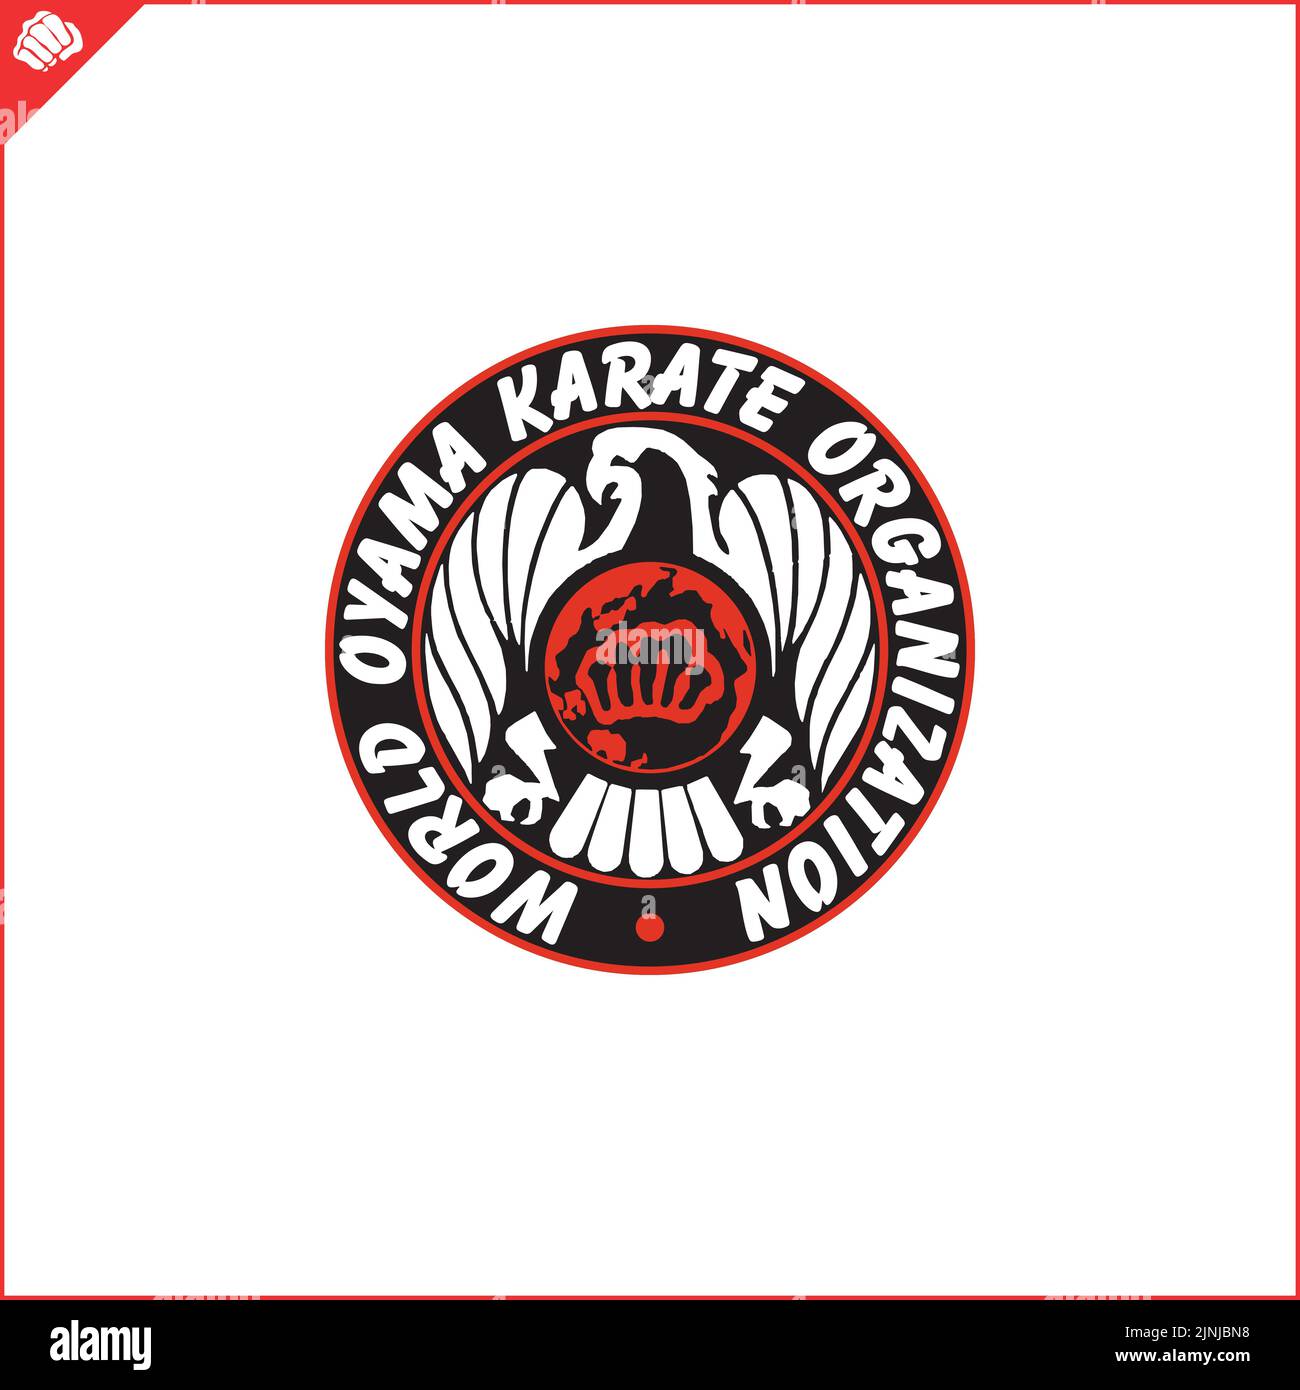 World taekwondo federation hi-res stock photography and images - Alamy